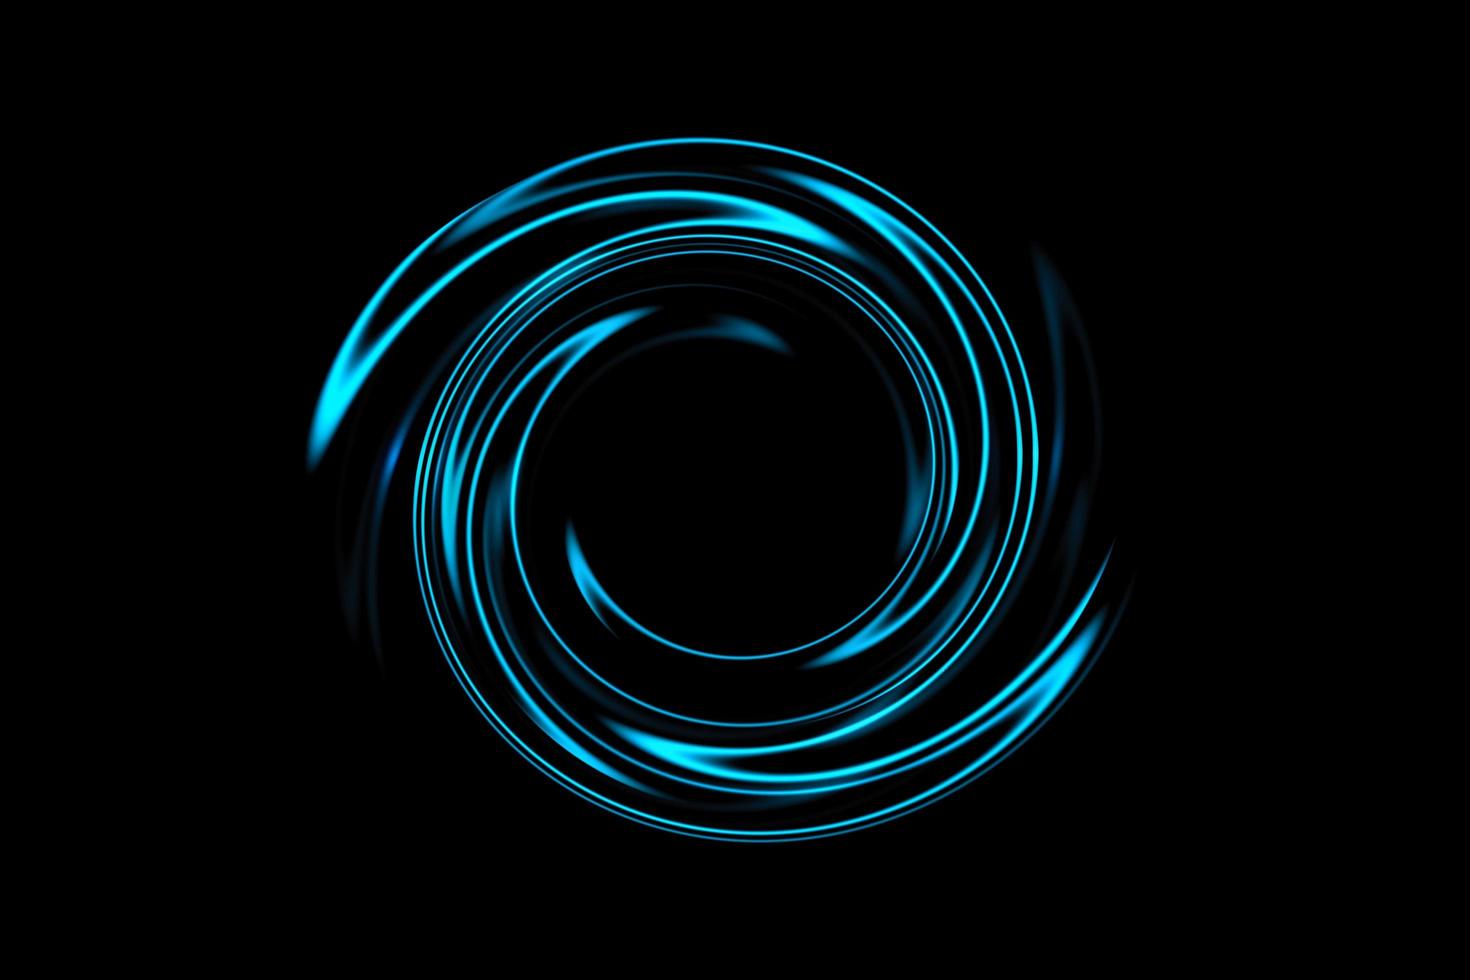 tunnel en spirale abstrait avec rotation de cercle bleu clair sur fond noir photo